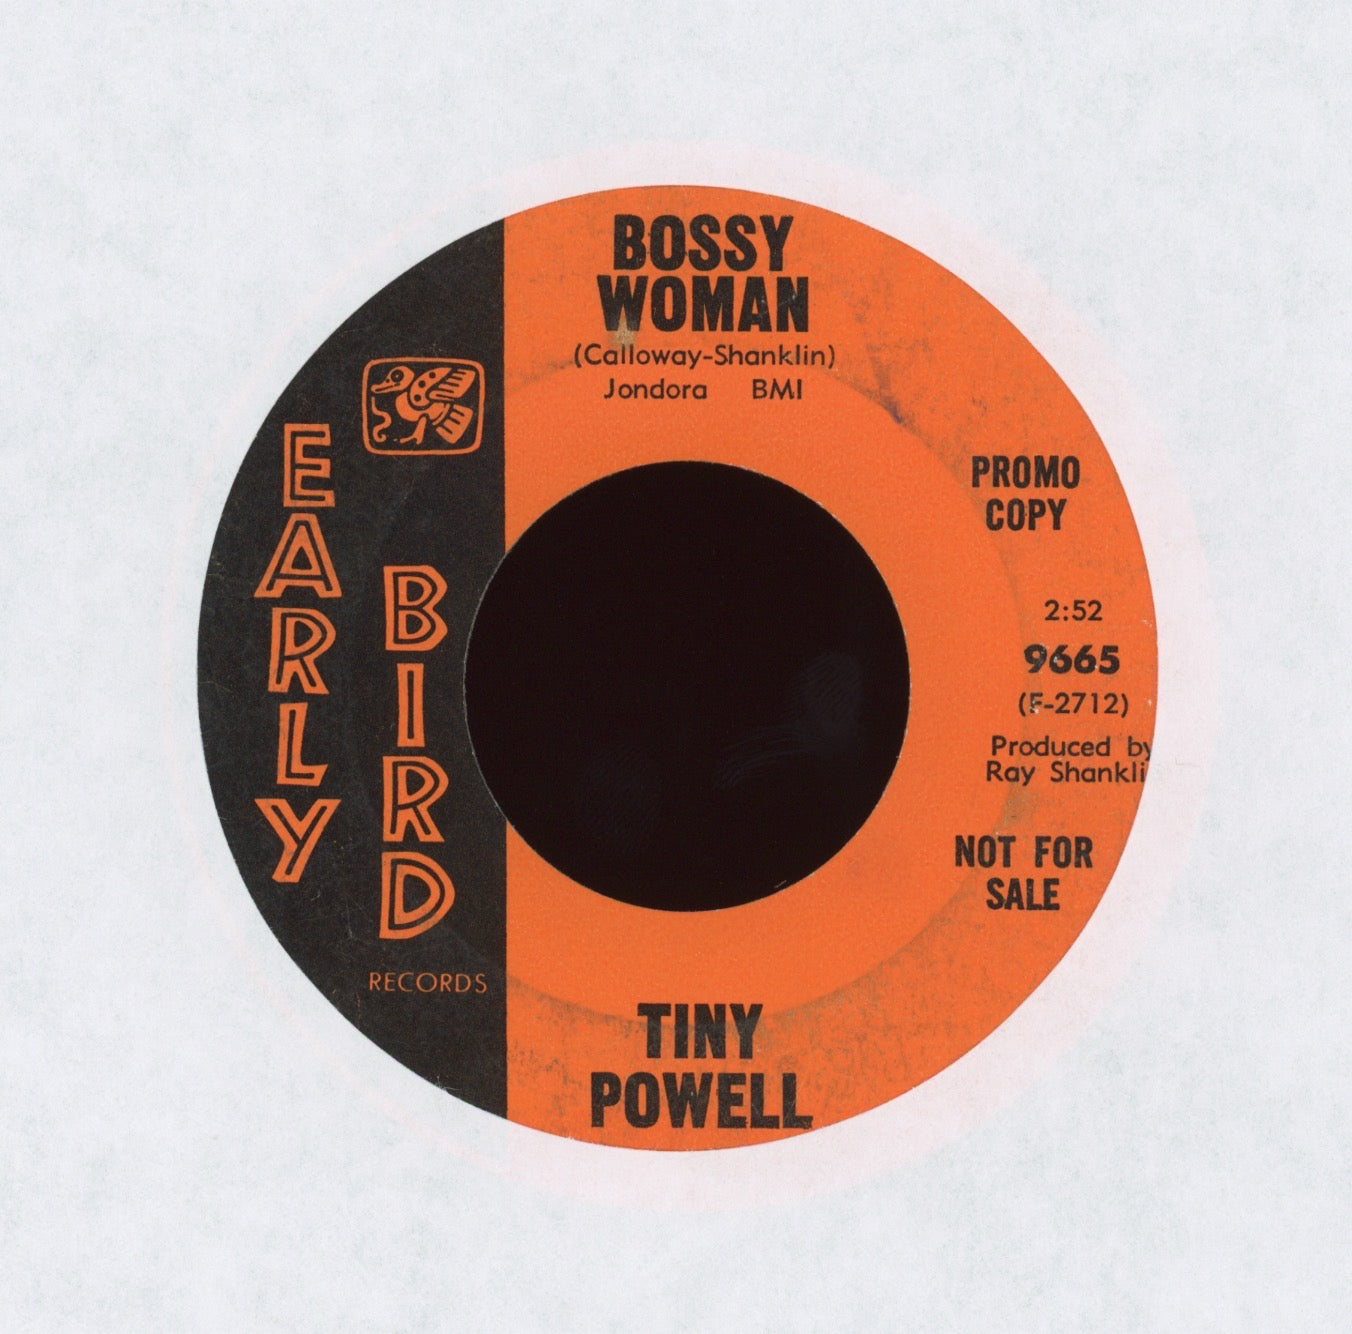 Tiny Powell - Bossy Woman on Early Bird Promo